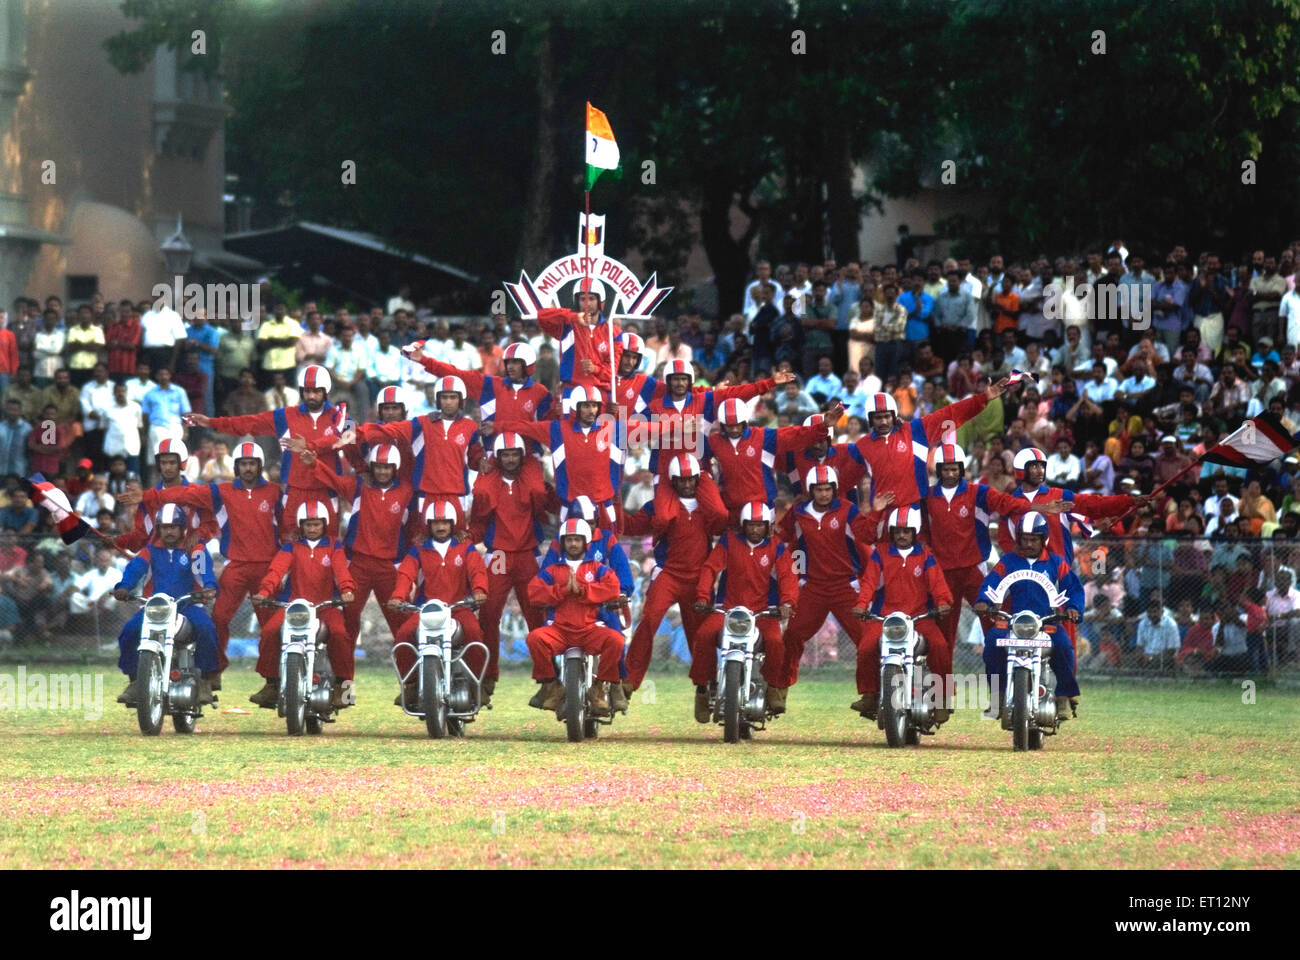 L'activité moto afficher par l'équipe de corps de la police militaire shwet ashwa au cours de journée de l'armée à Trivandrum Kerala ; Banque D'Images